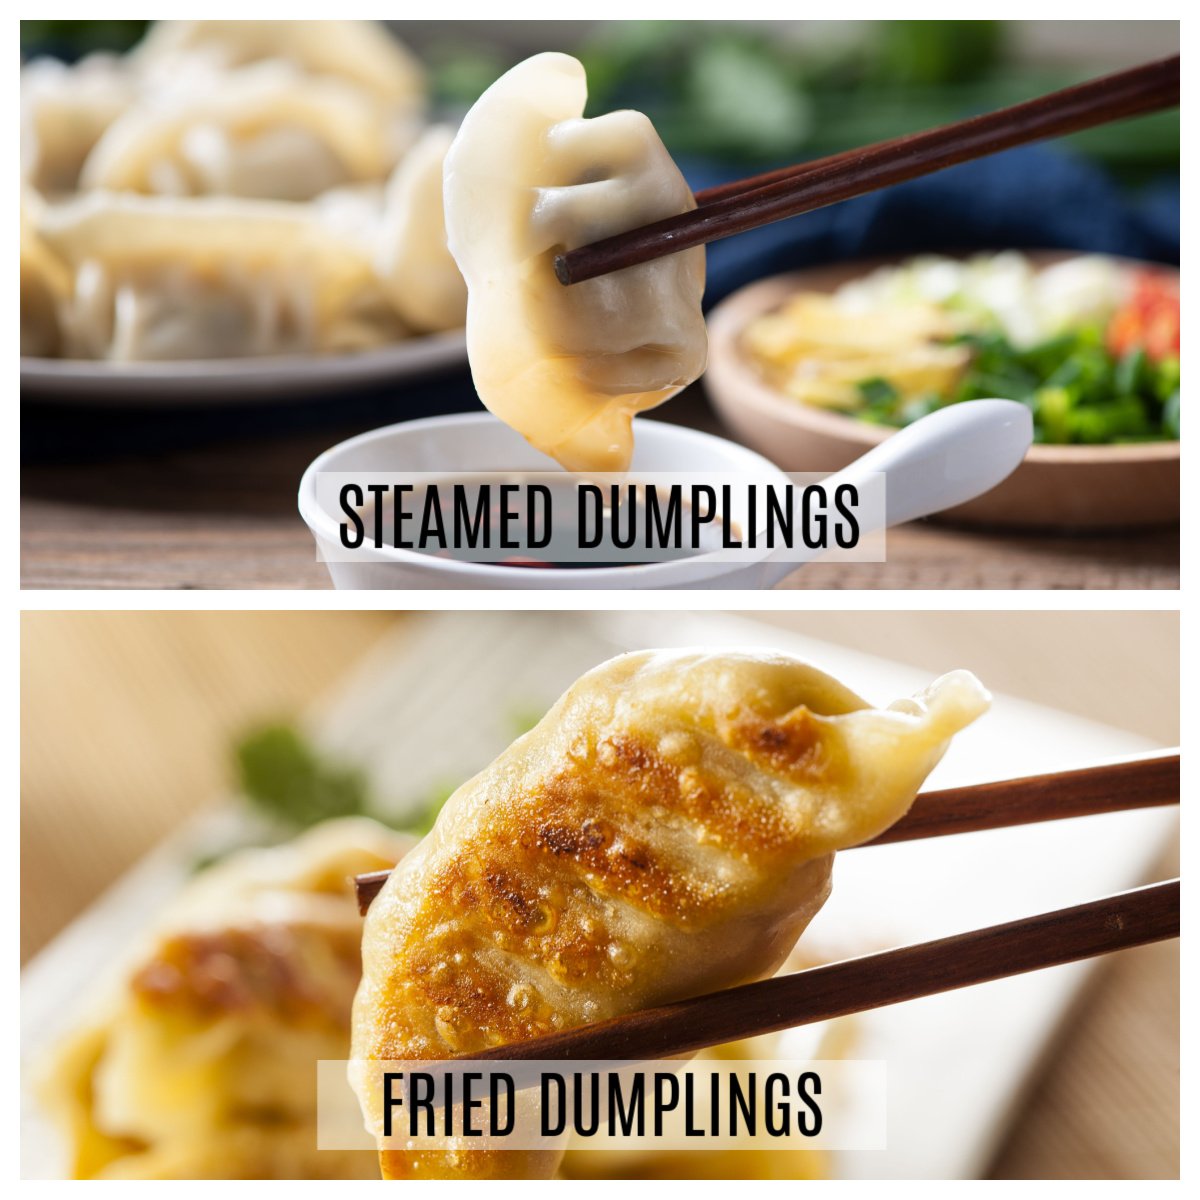 steamed vs fried dumplings